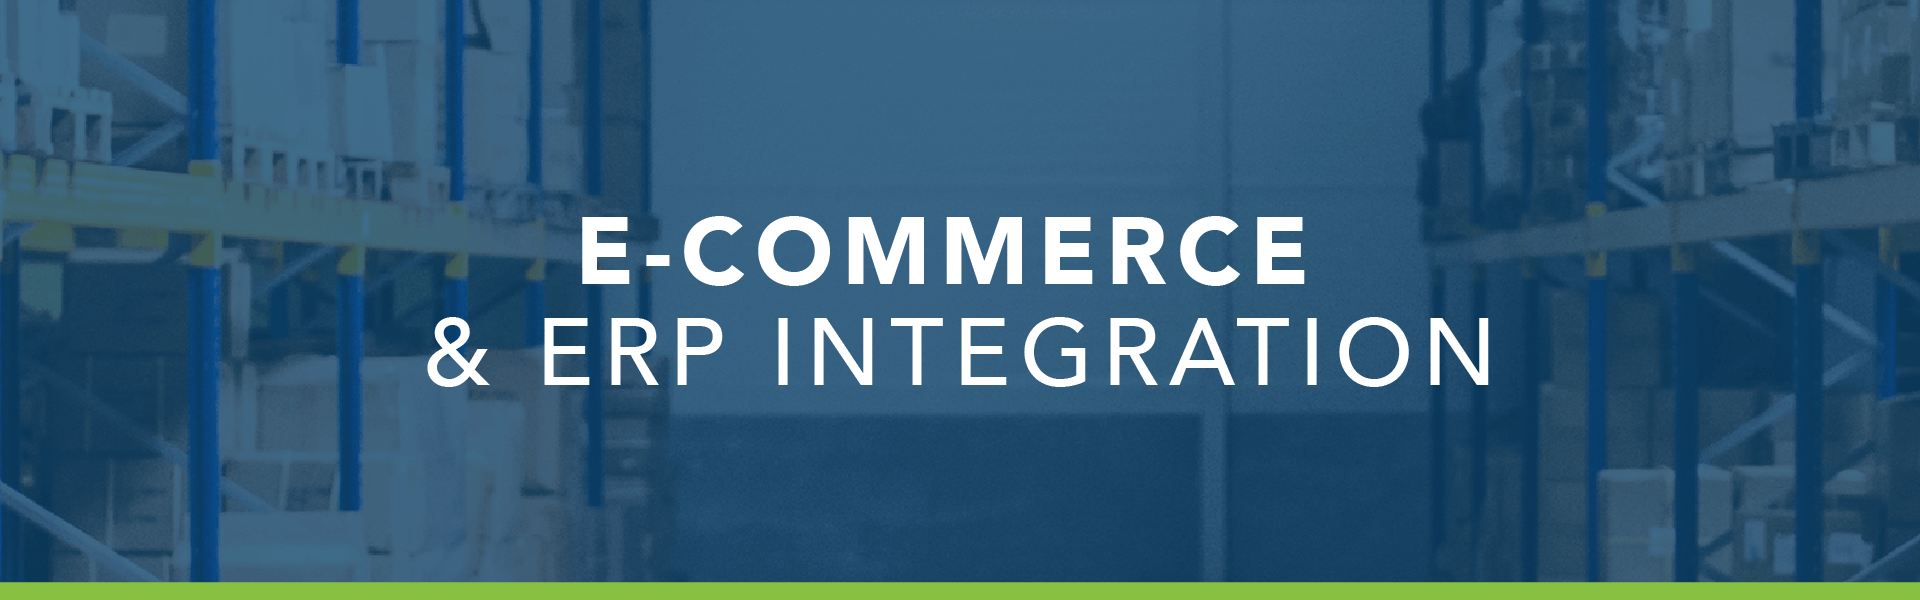 e-commerce & erp integration